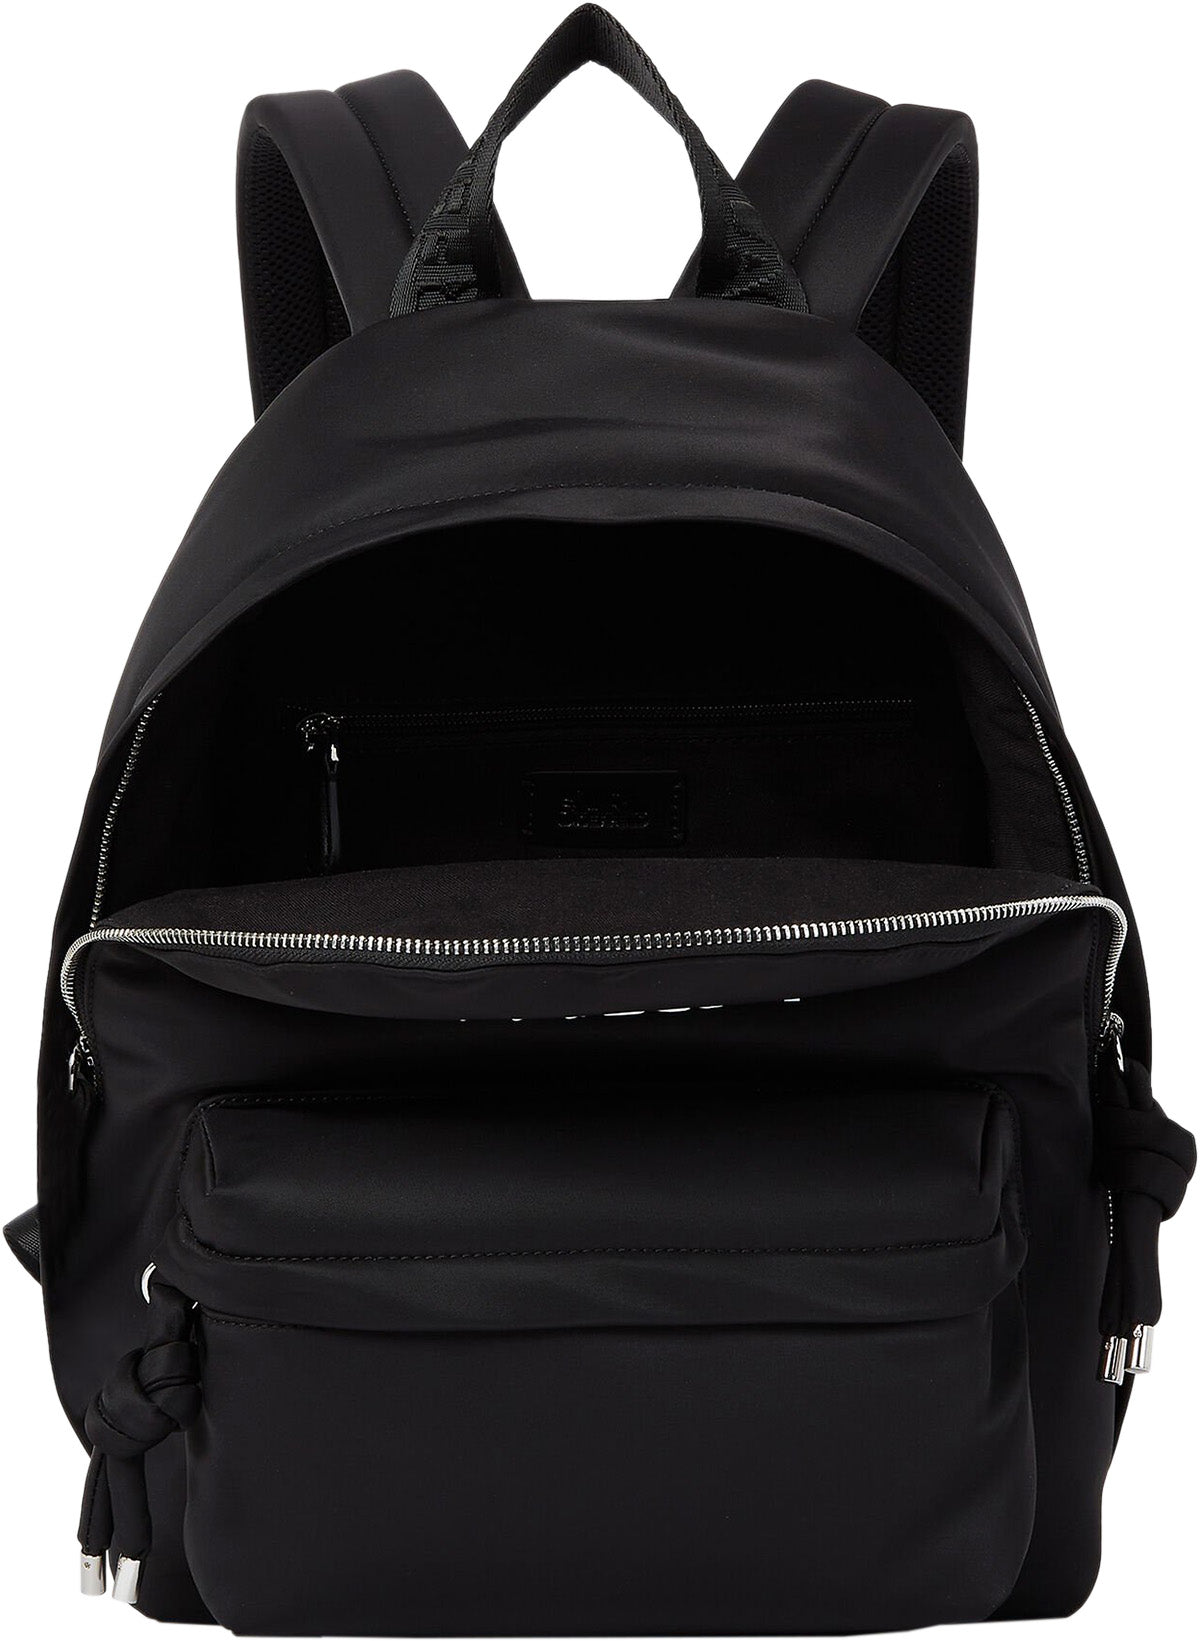 Backpacks Karl Lagerfeld - Vintage effect backpack - 815901582450910